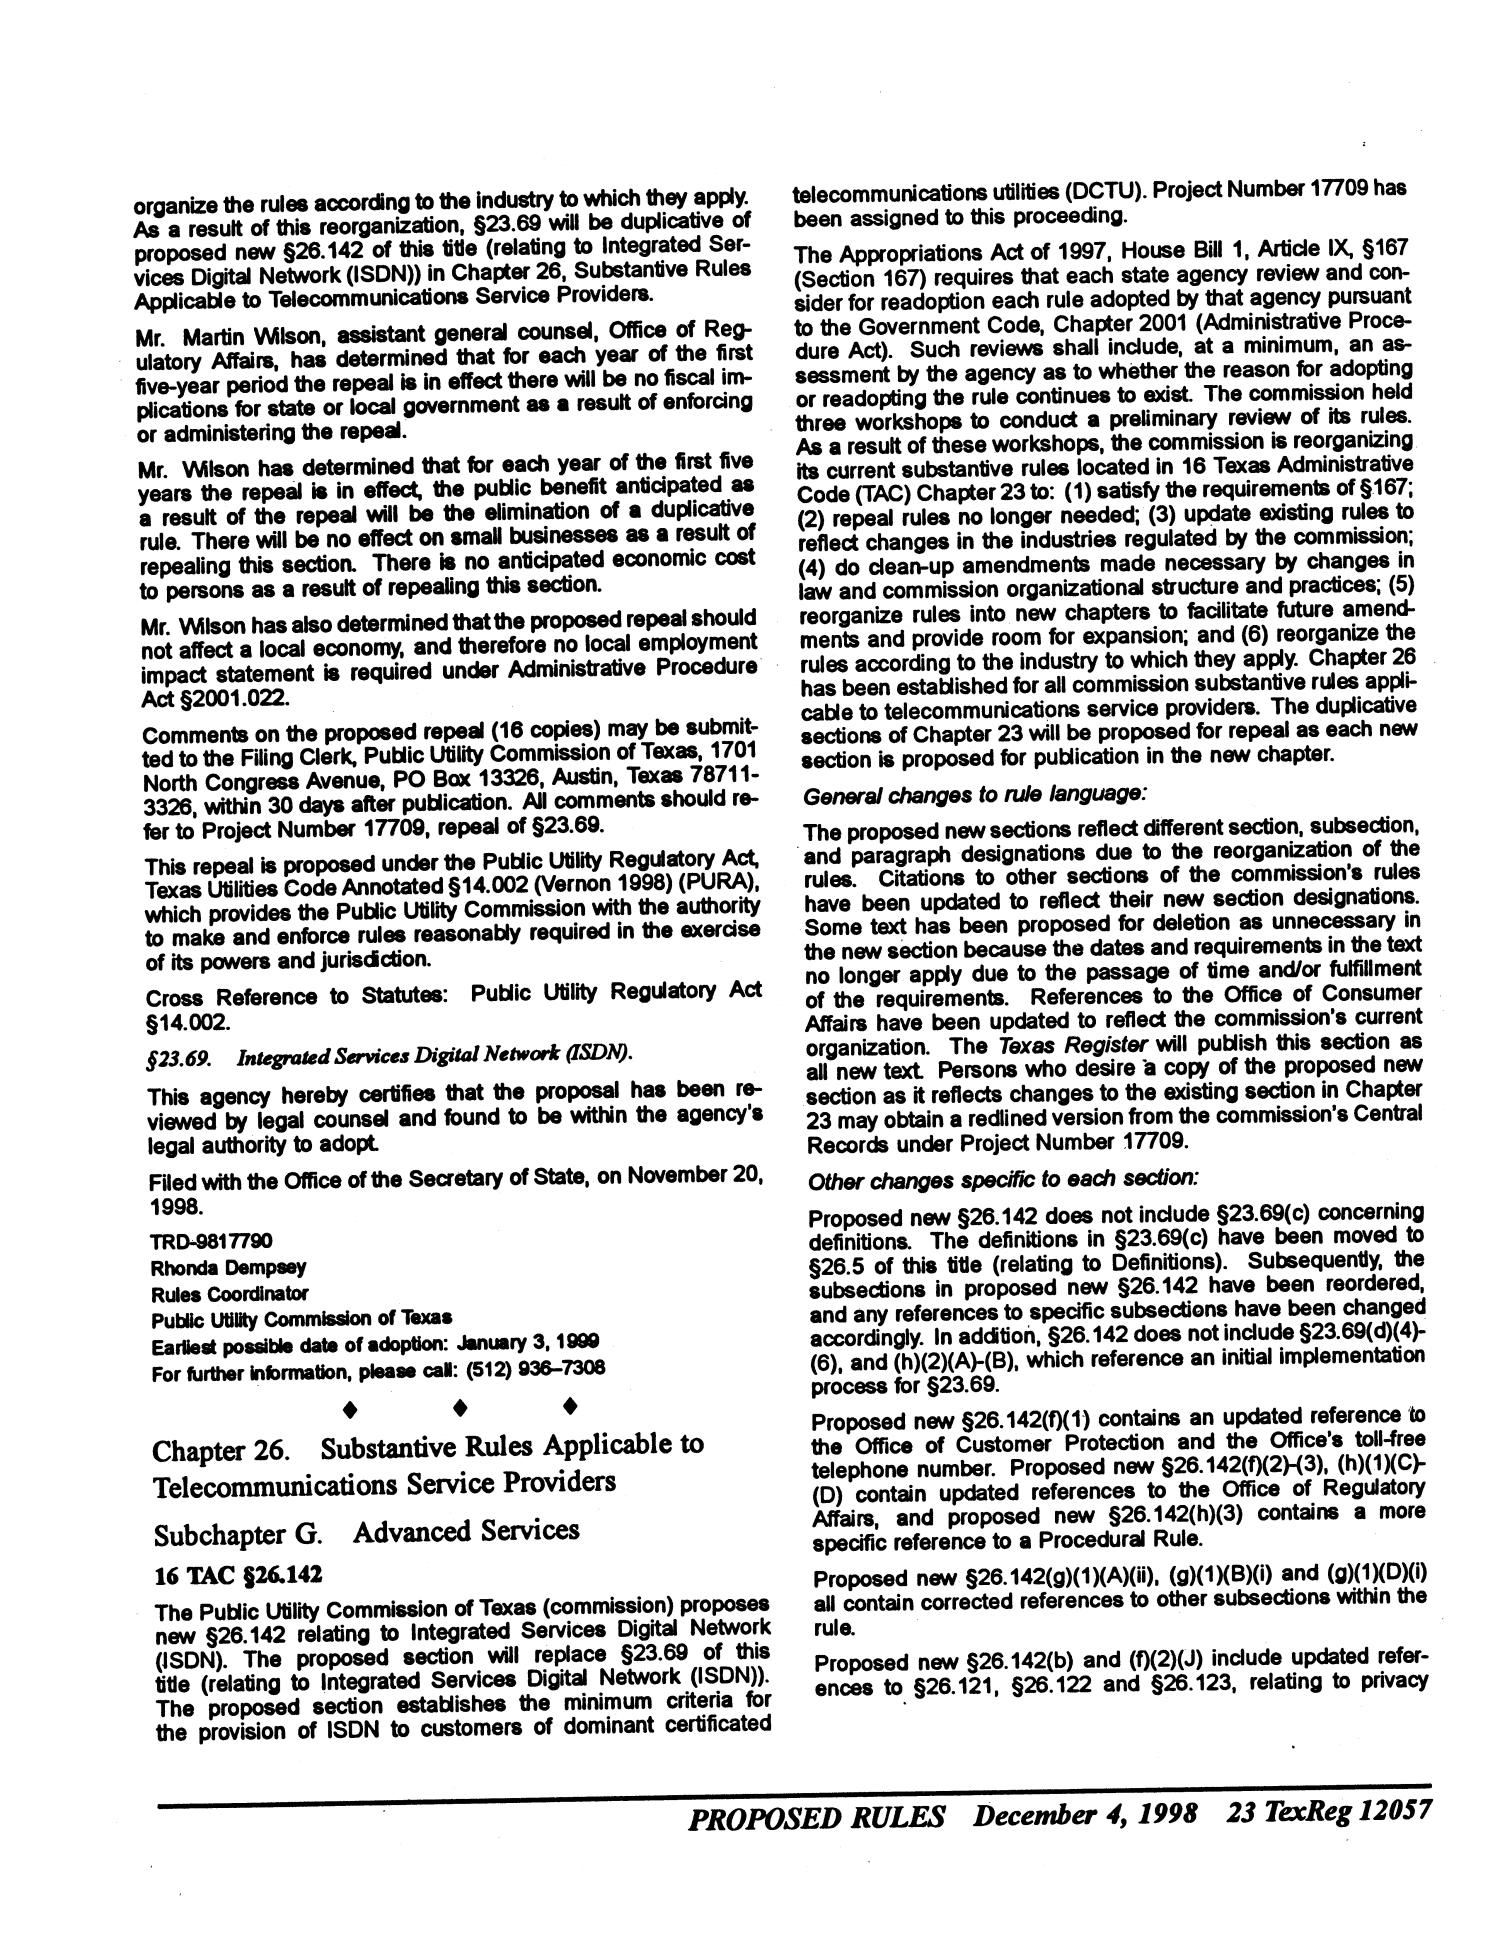 Texas Register, Volume 23, Number 49, Part I, Pages 12009-12154, December 4, 1998
                                                
                                                    12057
                                                